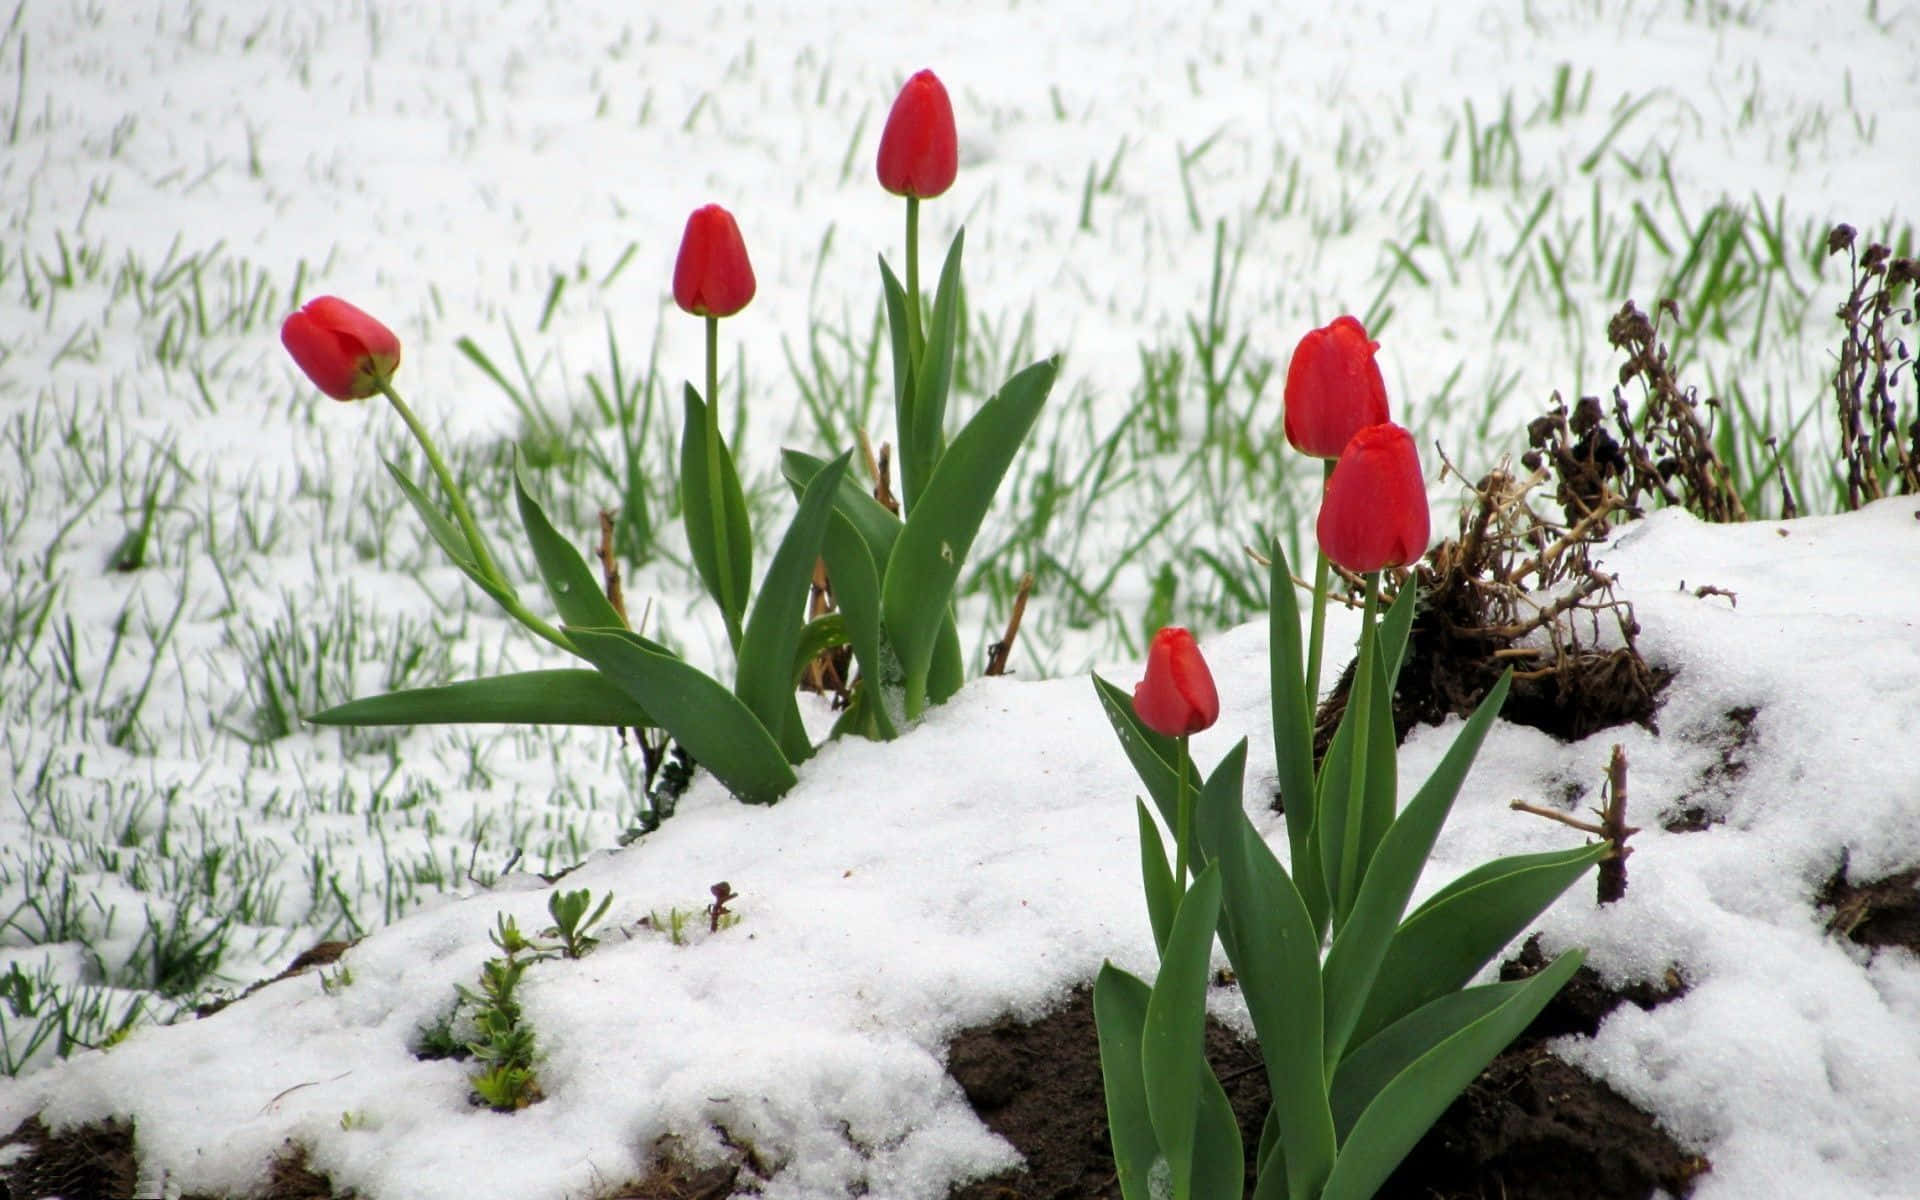 Картинка начало весны на телефон. Весенние цветы. Тюльпаны в снегу.